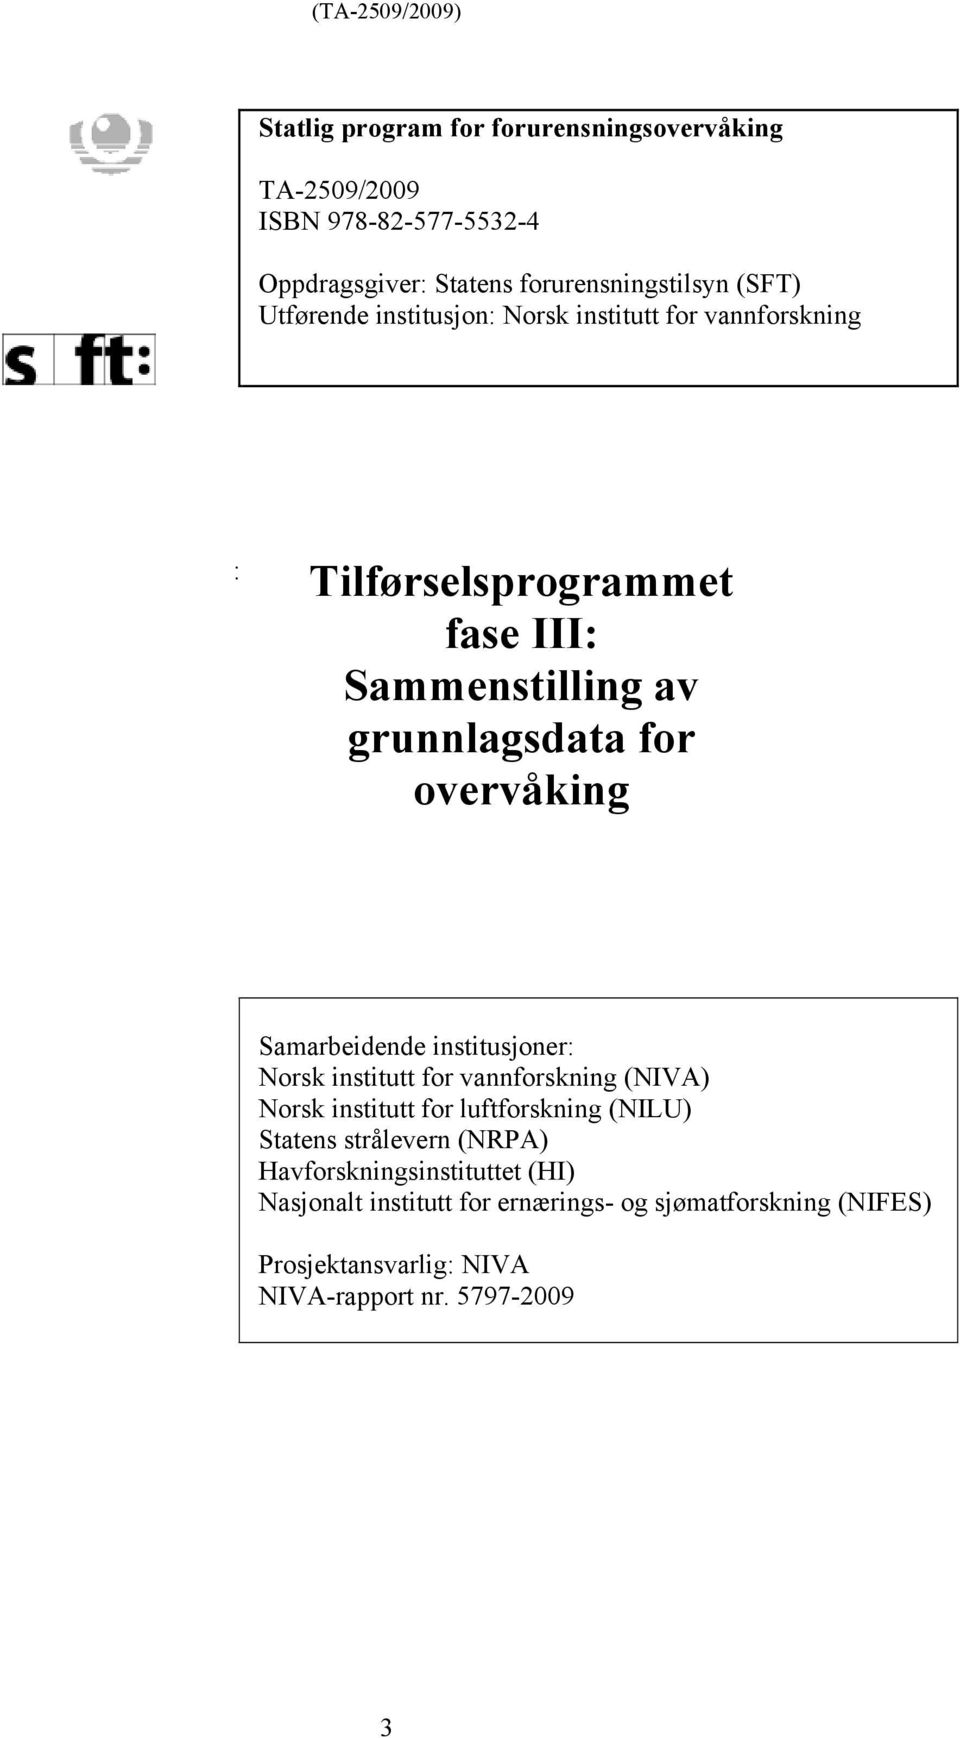 Samarbeidende institusjoner: Norsk institutt for vannforskning (NIVA) Norsk institutt for luftforskning (NILU) Statens strålevern (NRPA)